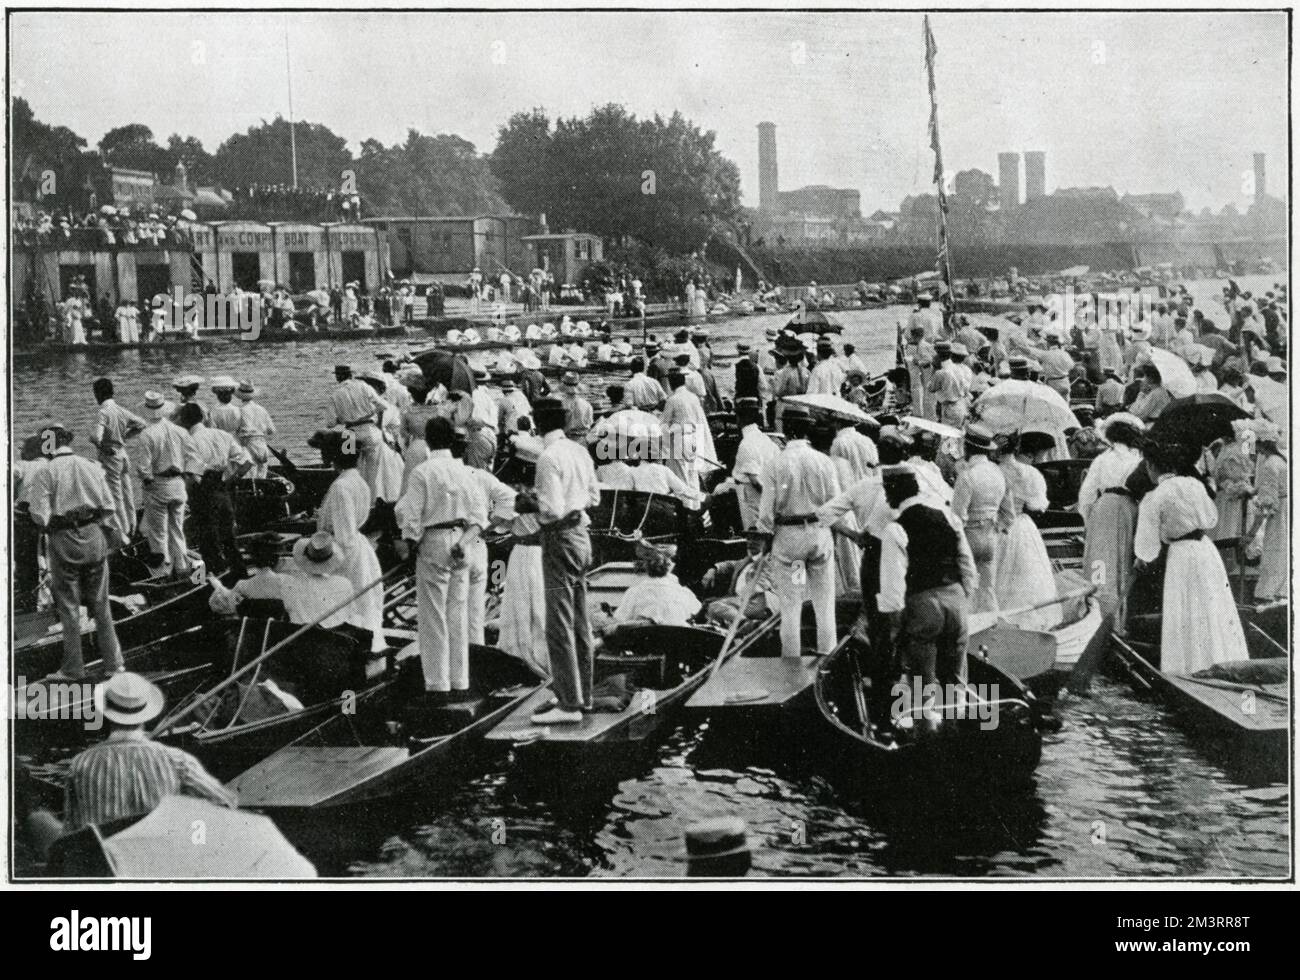 Regata sul Tamigi a Kingston, con molte persone in piedi su barche a remi per avere una vista migliore. Data: 1906 Foto Stock